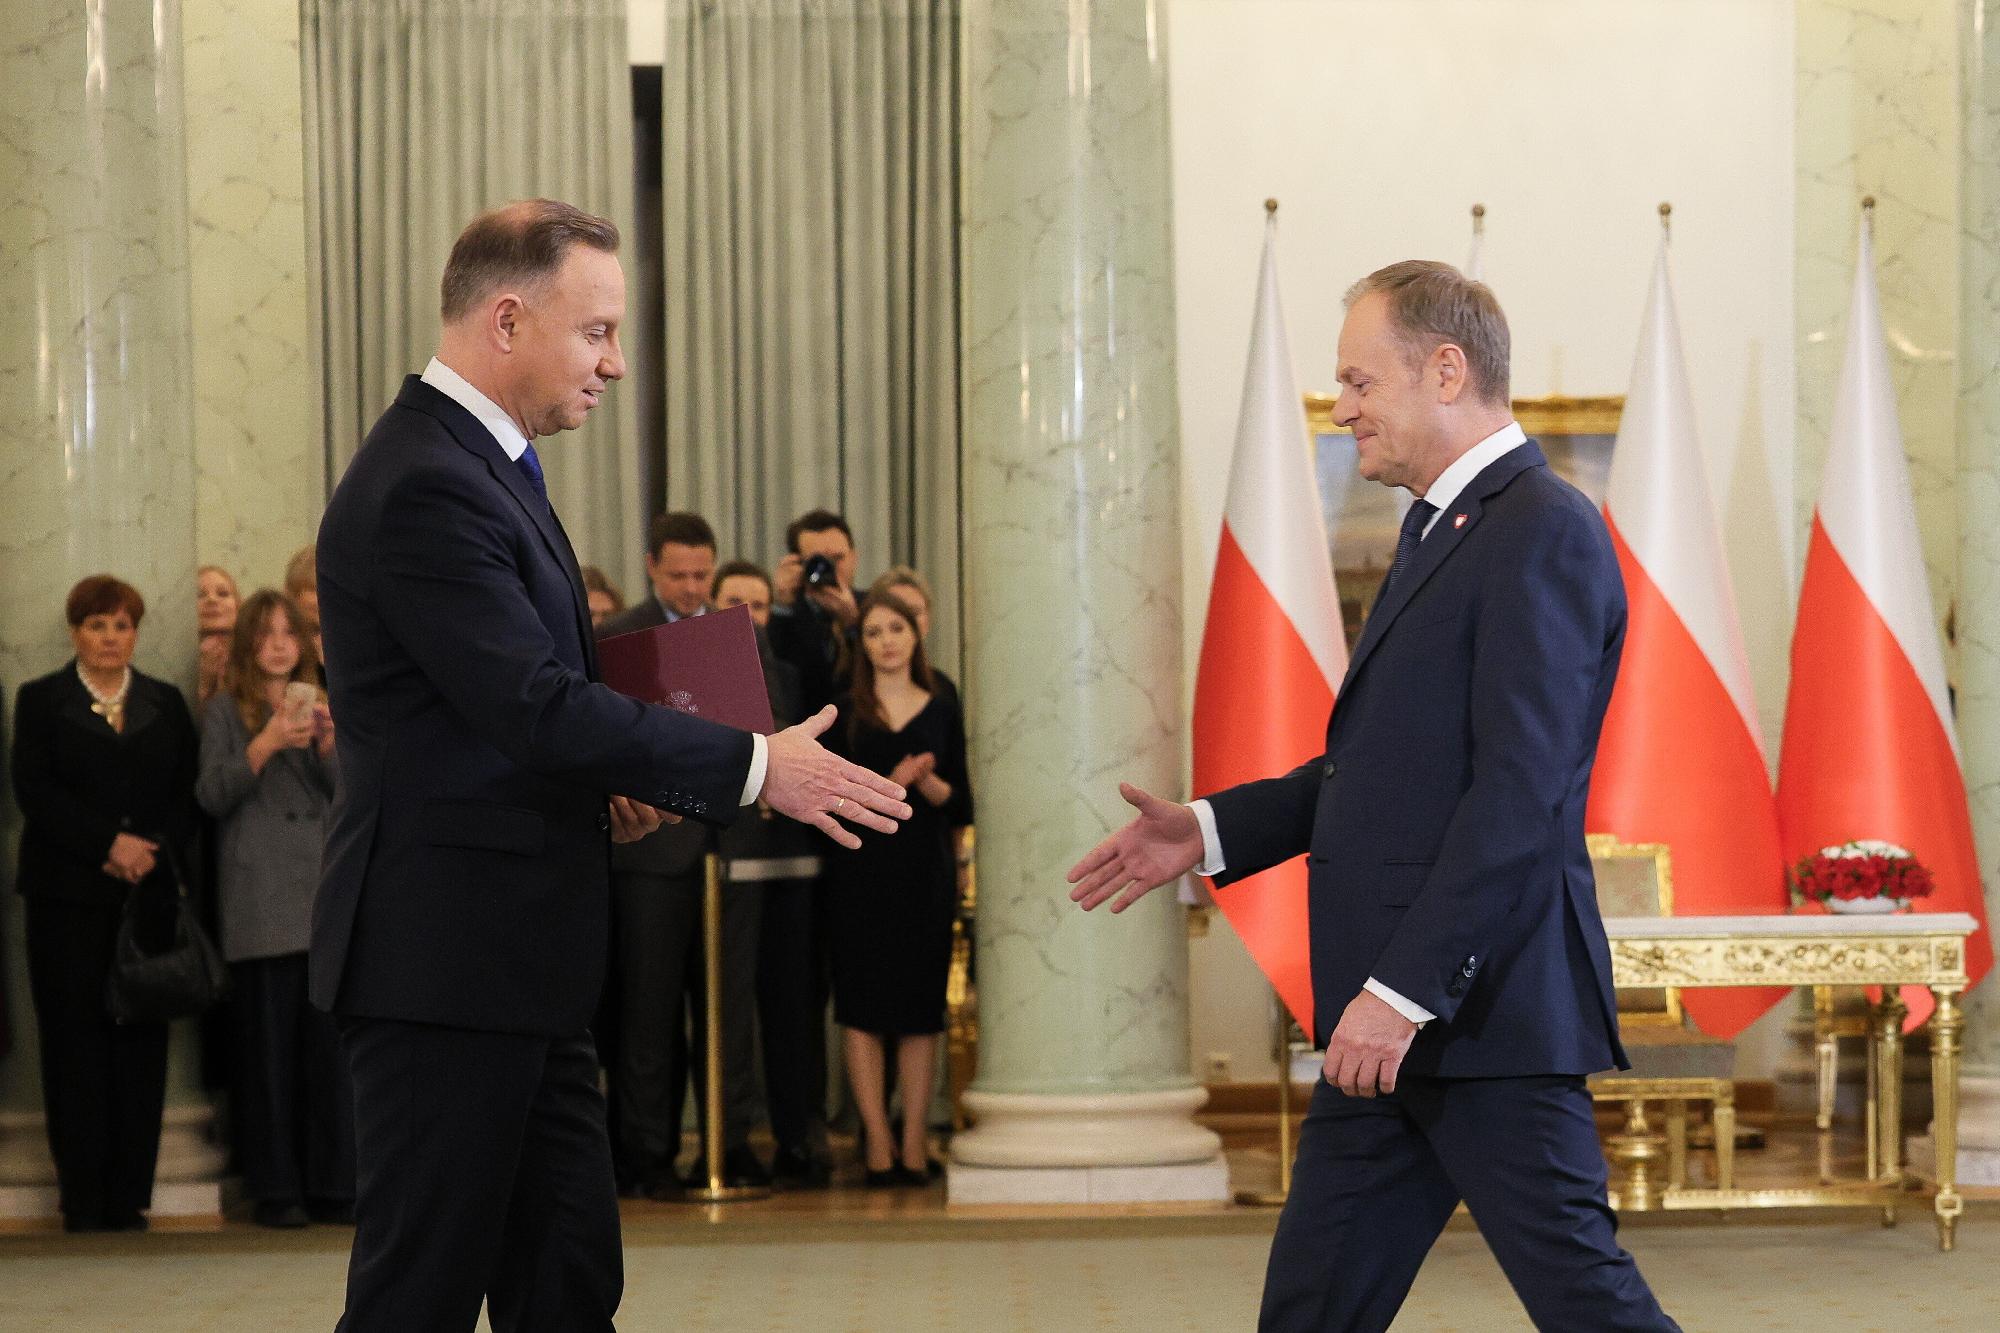 Az új kormány beiktatása Lengyelországban